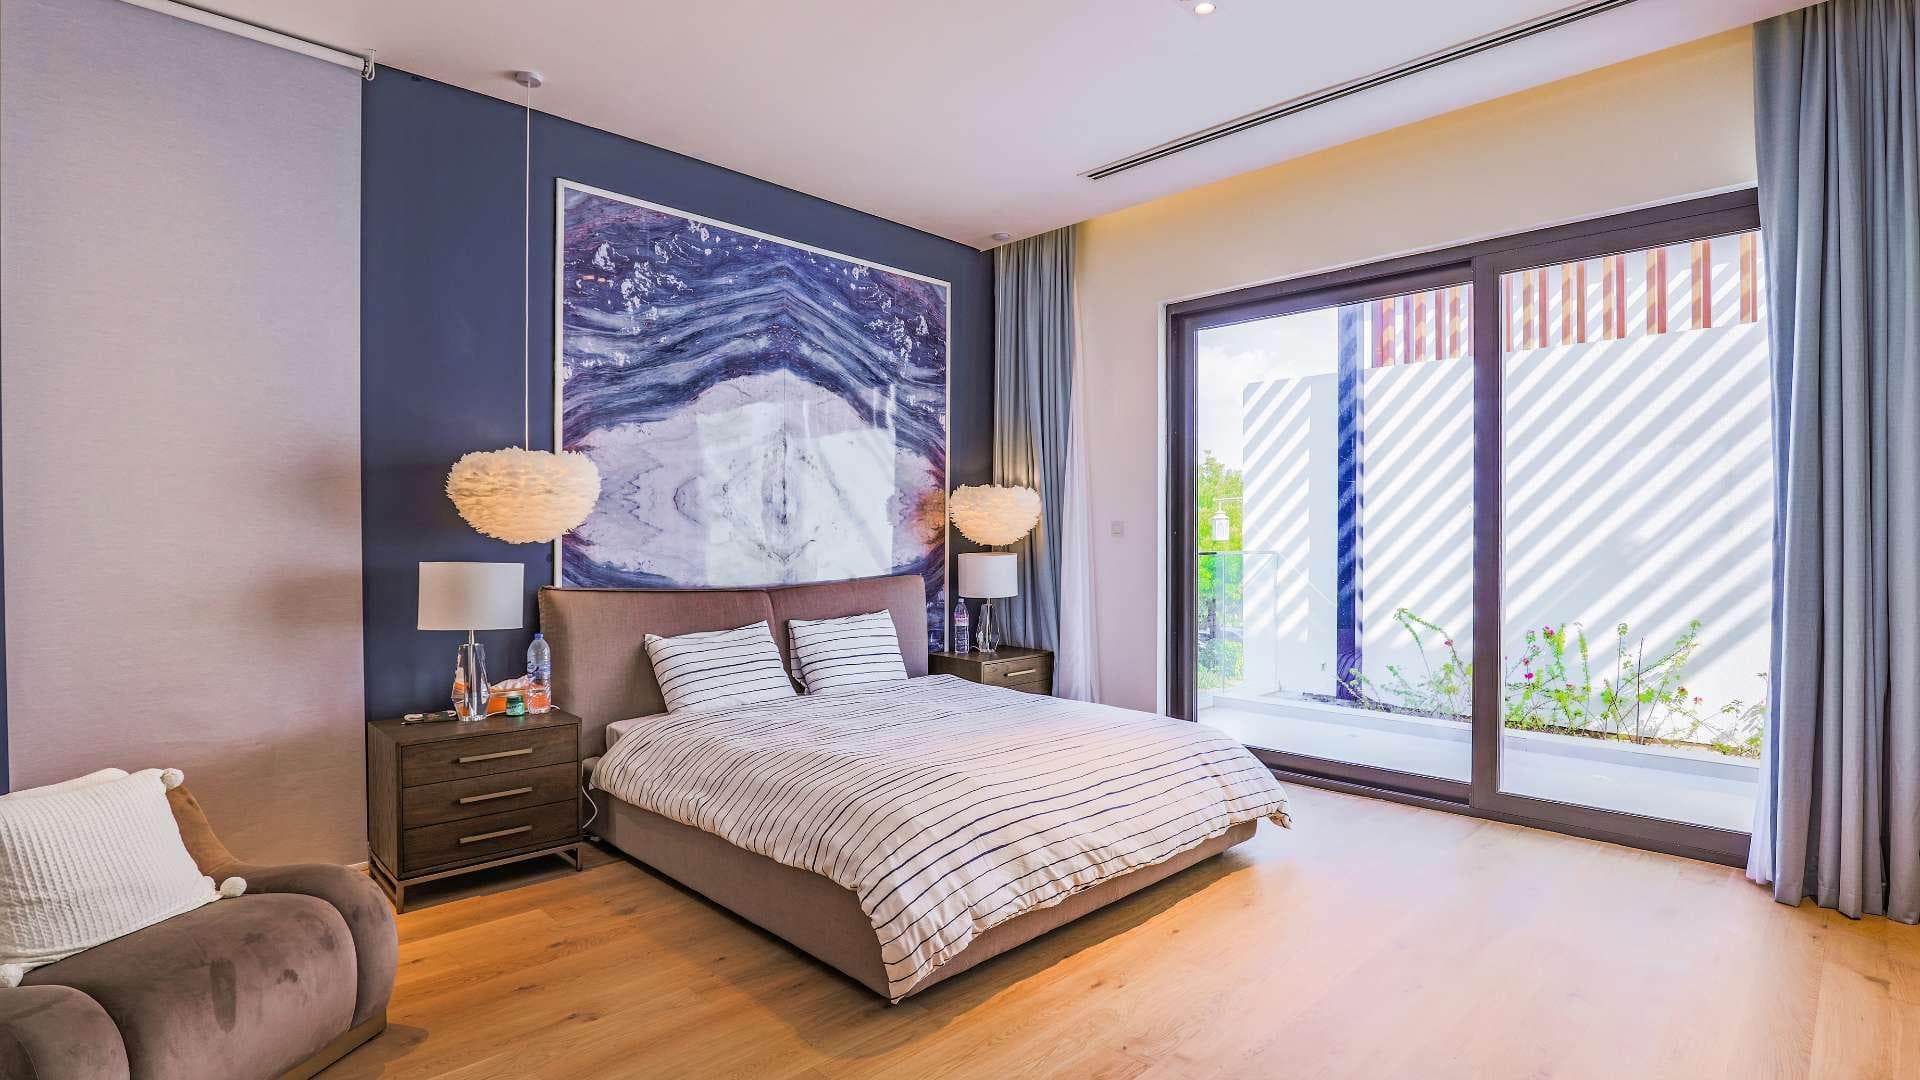 5 Bedroom Villa For Rent The Nest Lp16421 1c65798081f19c00.jpg